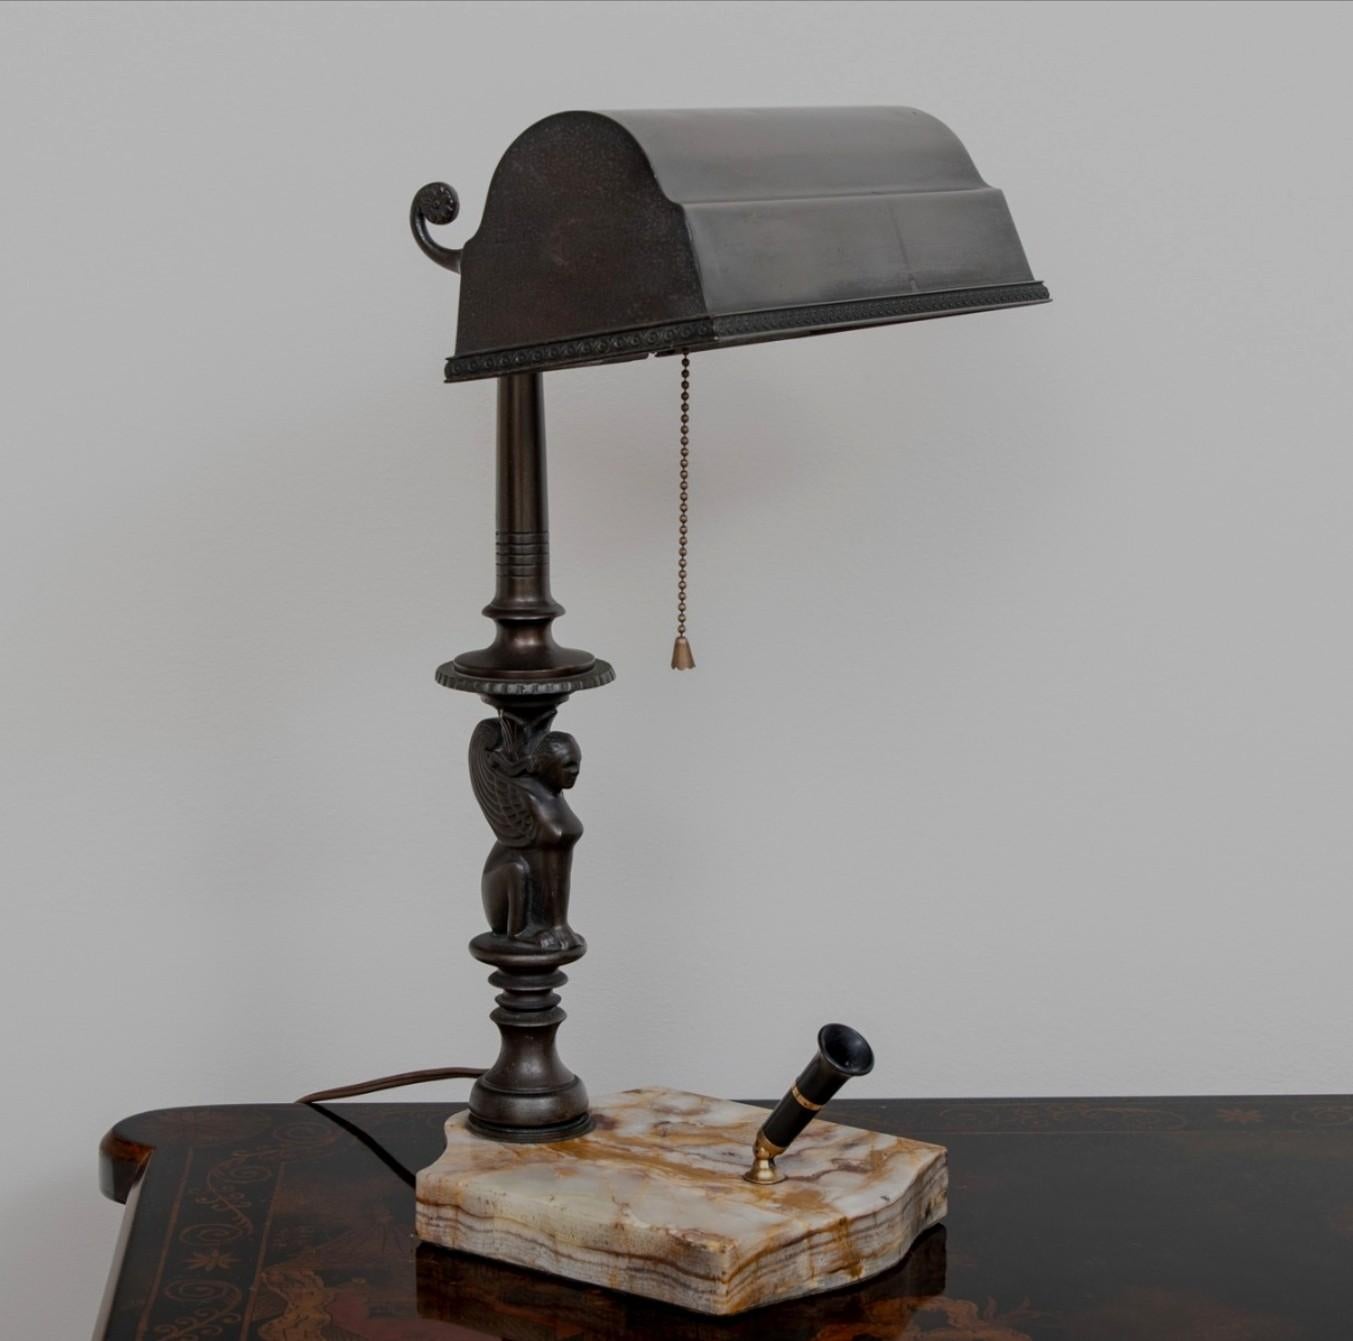 Lampe de bureau de luxe de style banquier en Amronlite Sheaffer Fountain Pen, vers la fin des années 1920, avec un abat-jour en laiton d'origine magnifiquement patiné, reposant sur une colonne en forme de sphinx ailé égyptien sur une base en marbre